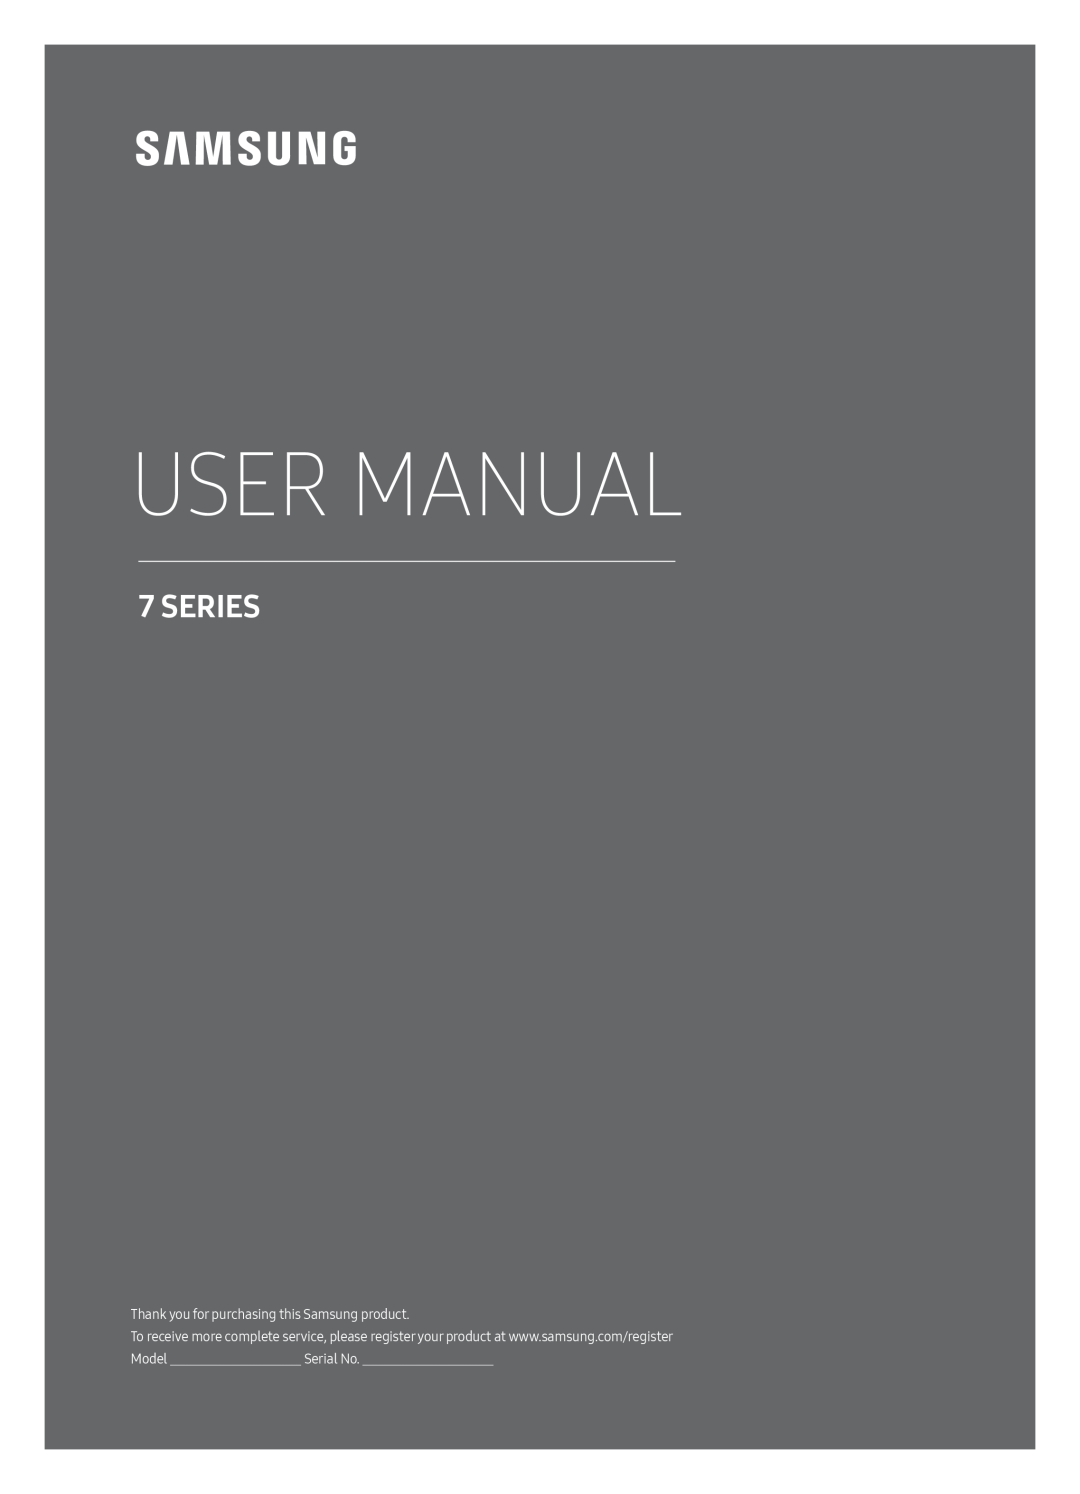 Samsung UE55MU7050LXXN, UE65MU7070LXXN, UE55MU7040LXXN, UE55MU7070LXXN, UE49MU7070LXXN manual User Manual, Series, Serial No 